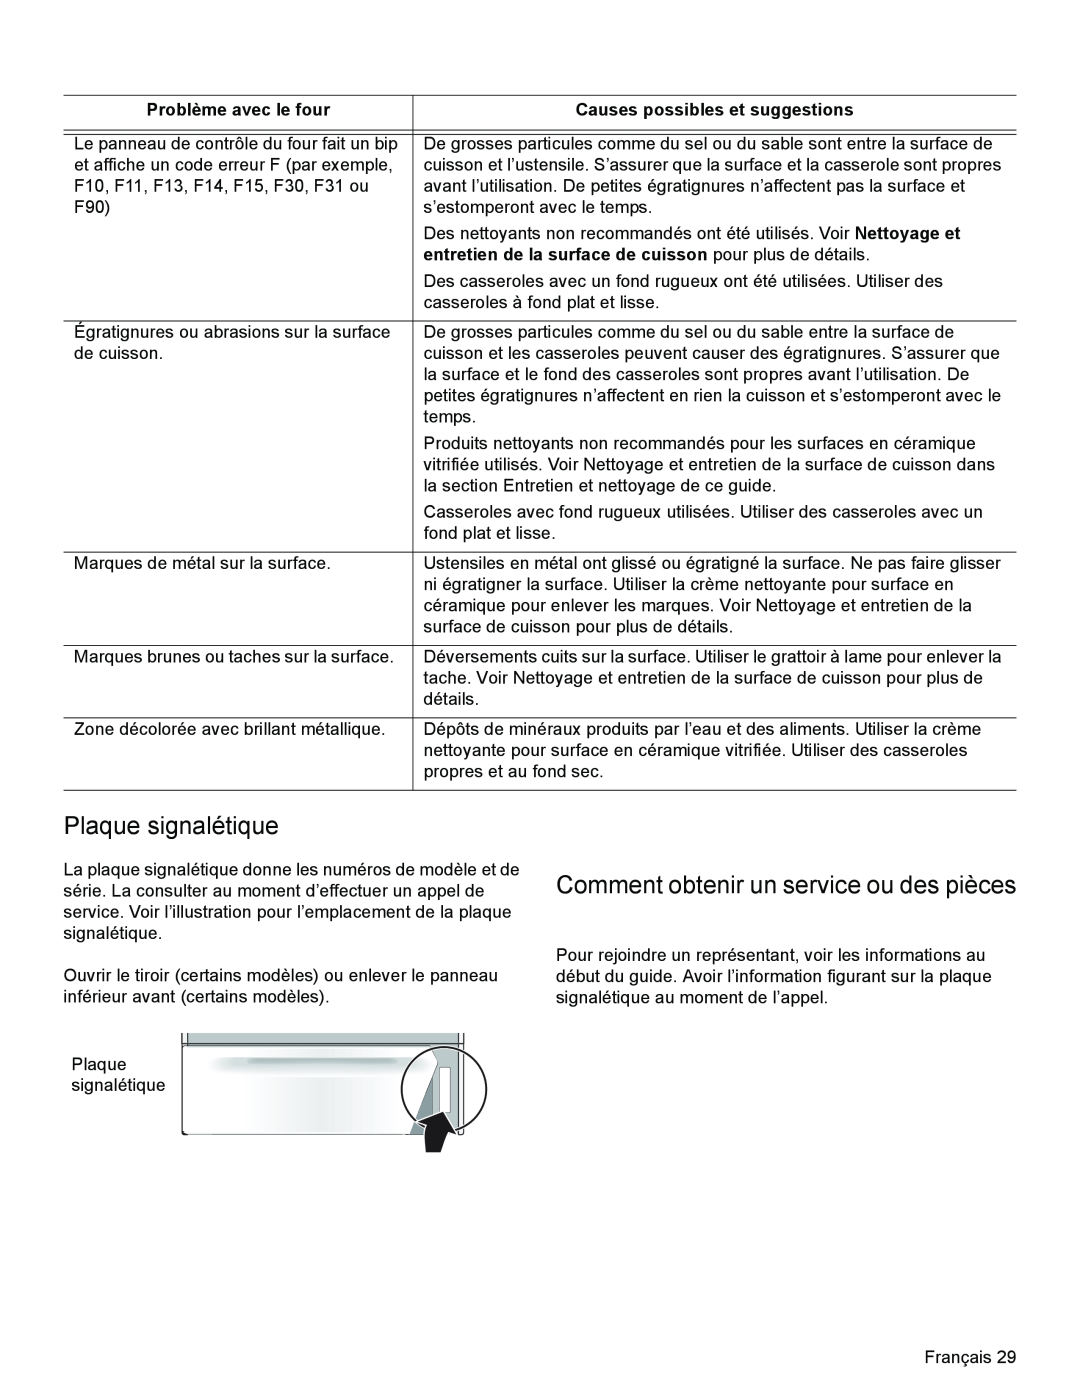 Bosch Appliances HES3063U manual Plaque signalétique, Comment obtenir un service ou des pièces, Problème avec le four 